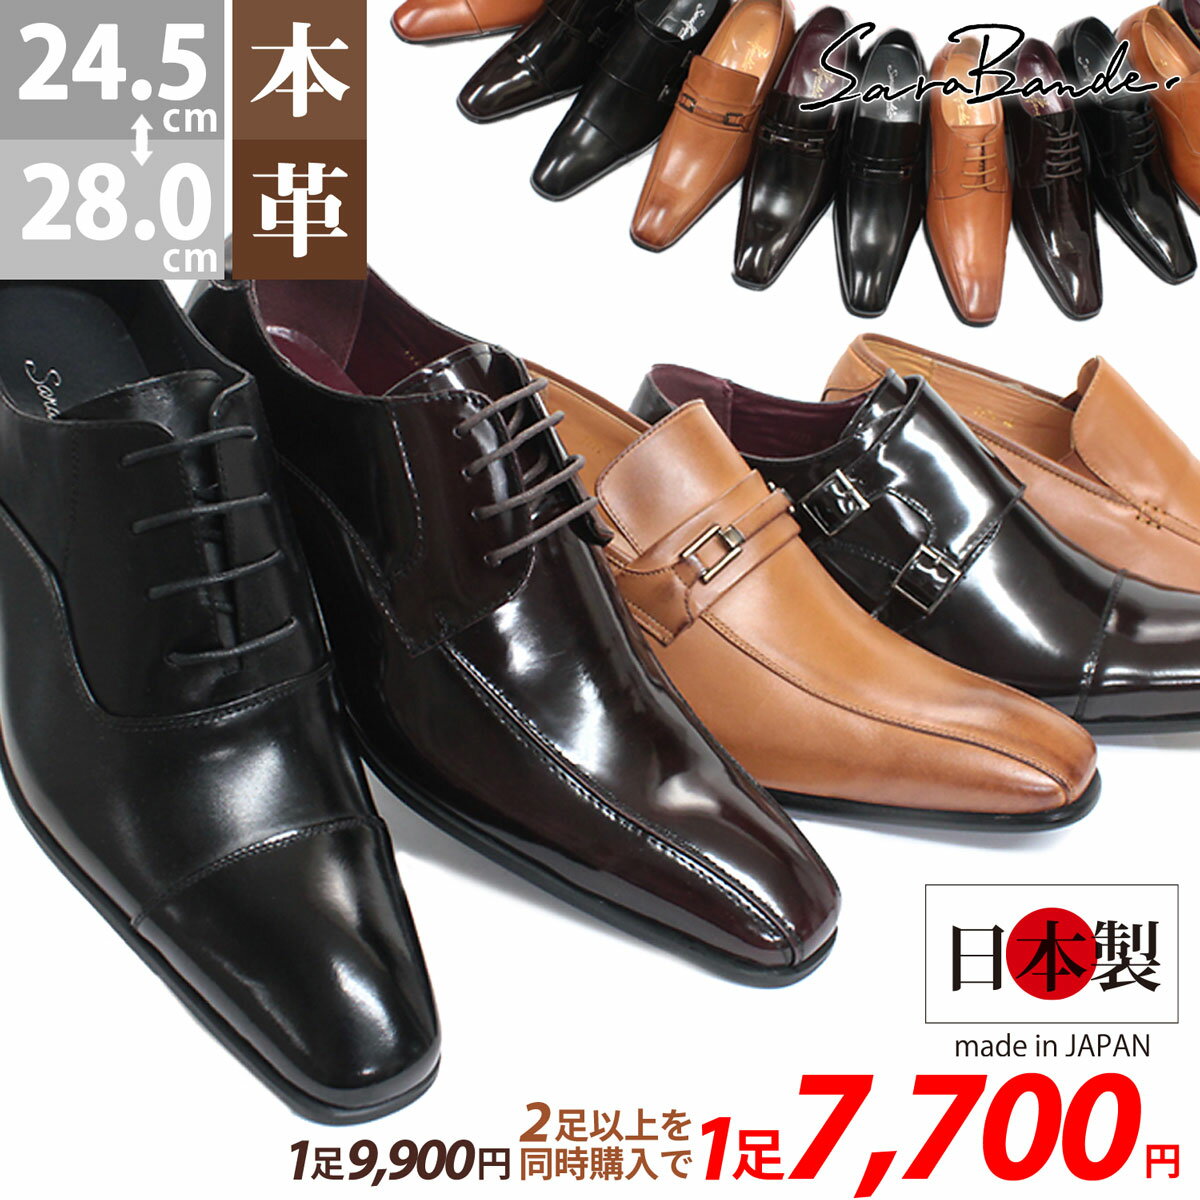 ビジネスシューズ 本革 日本製 革靴